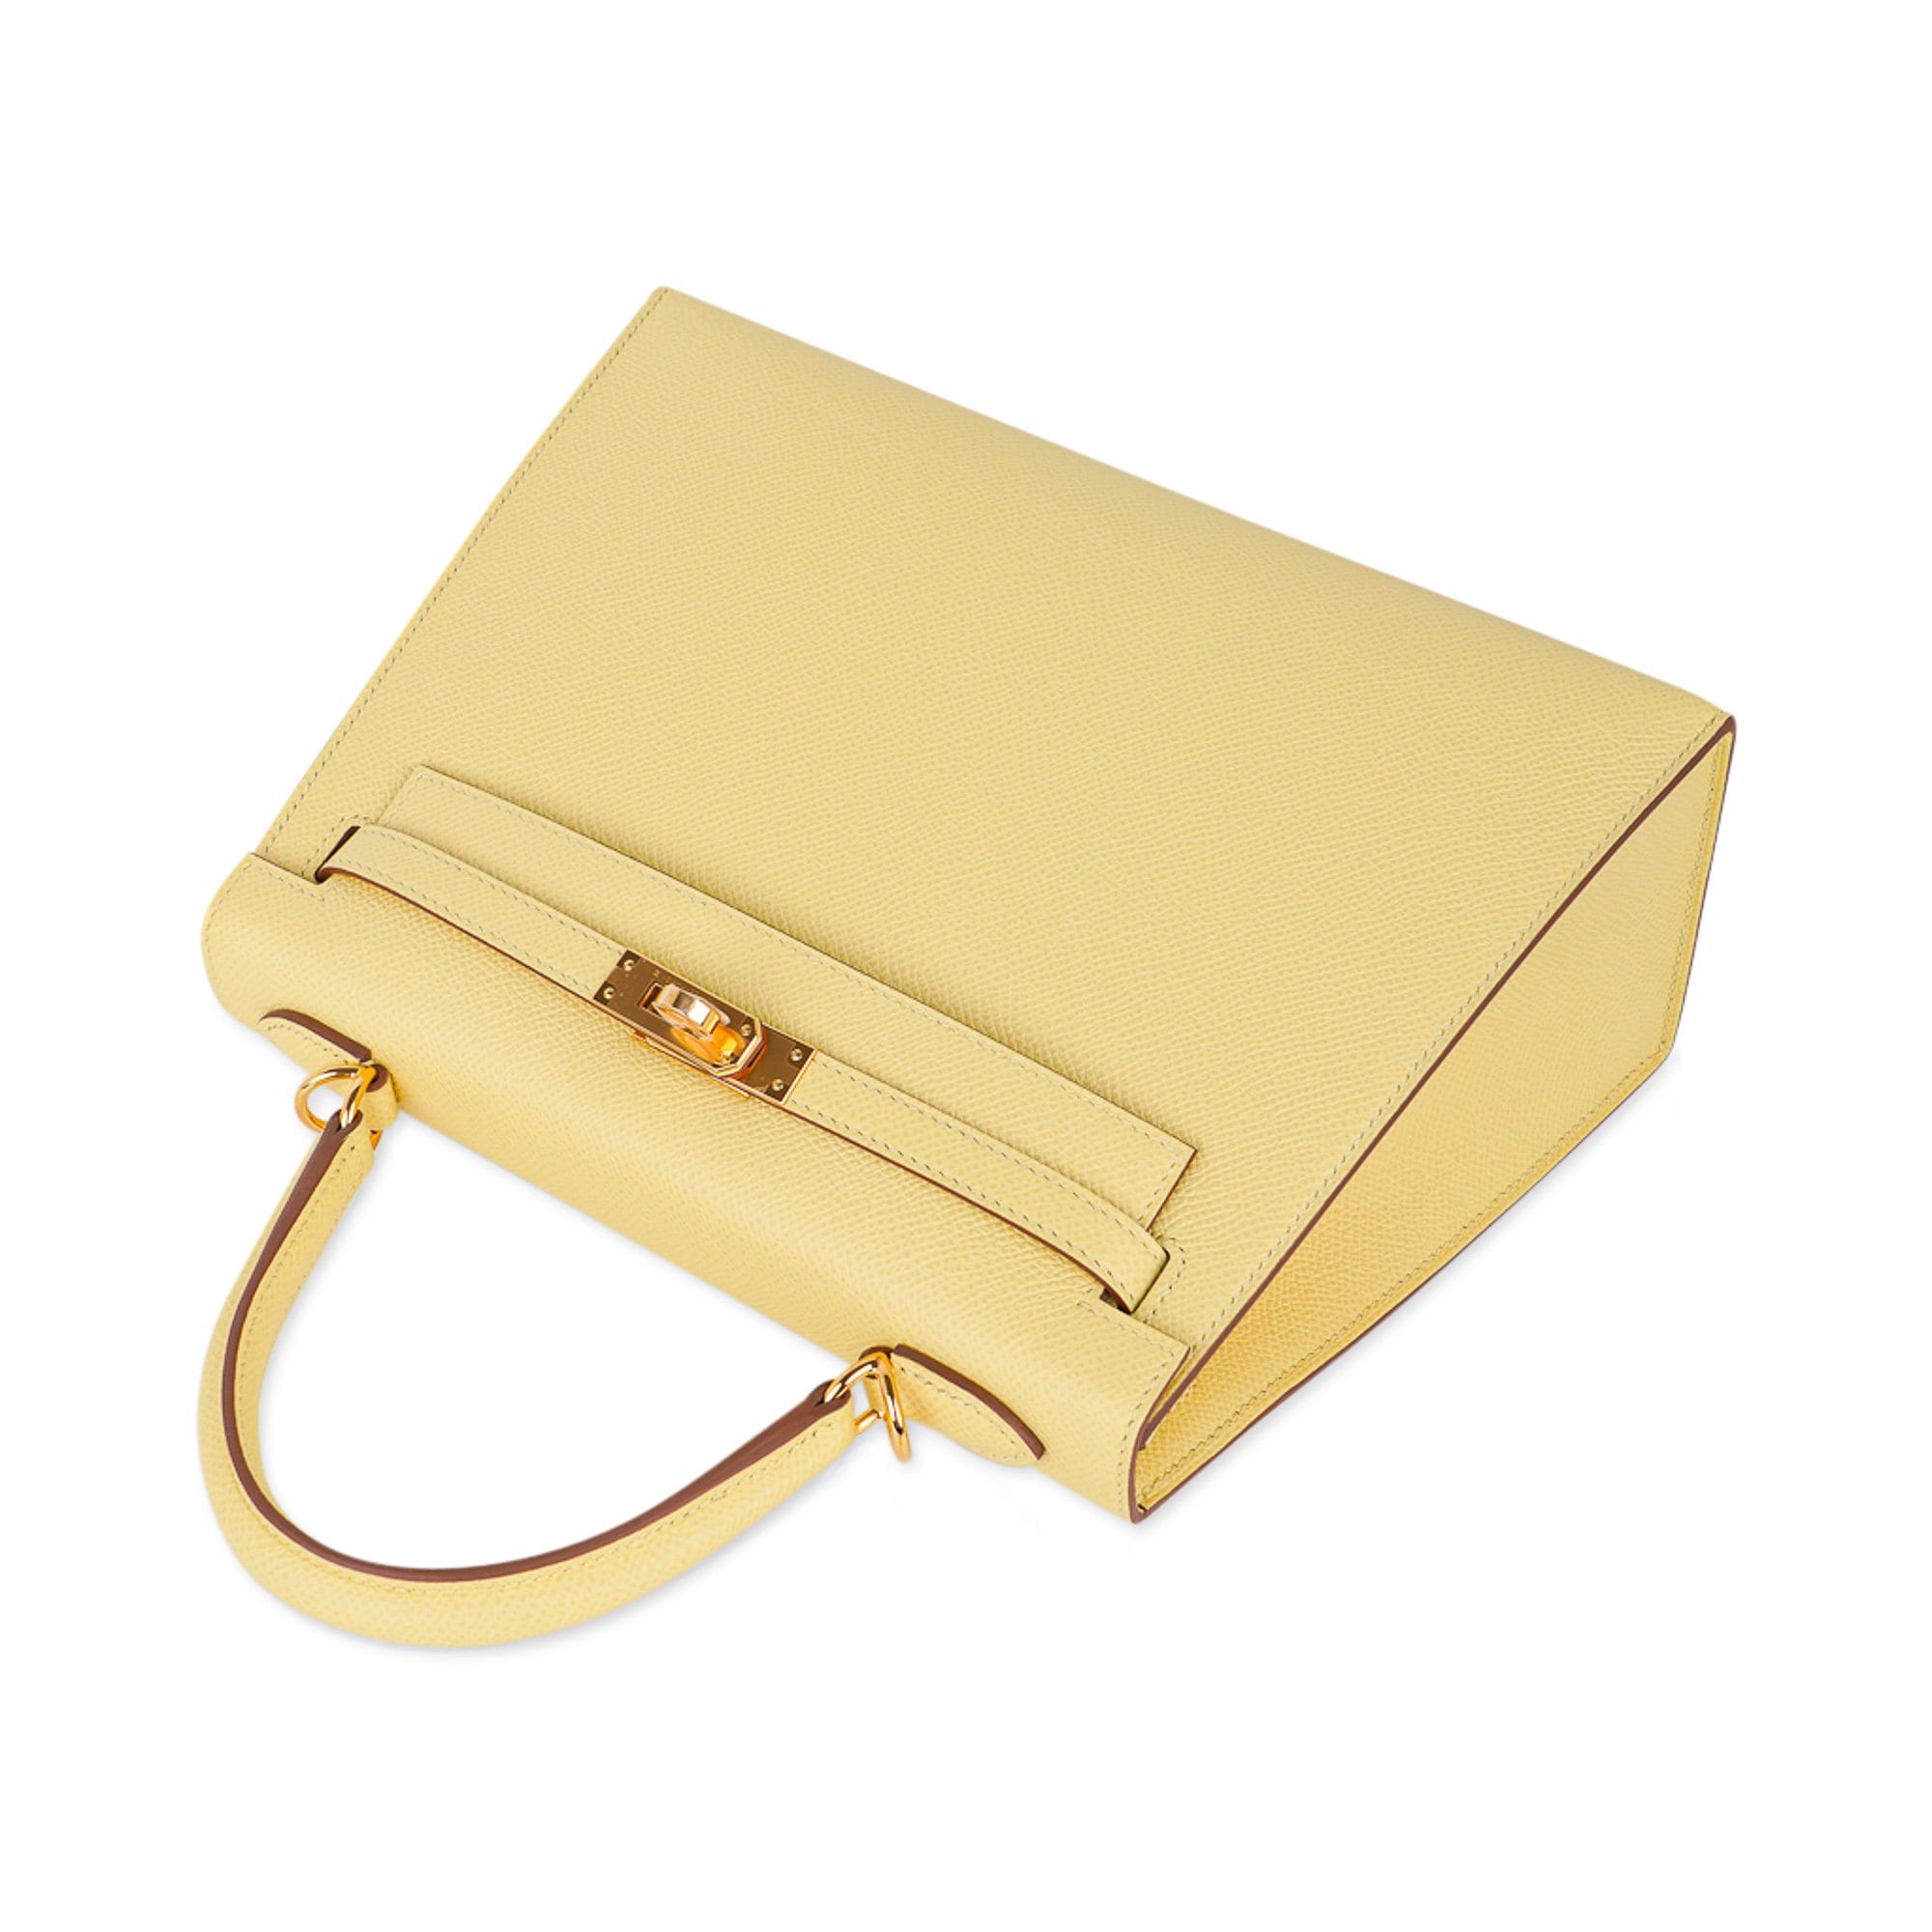 Hermes Kelly Bag 25cm Jaune Poussin Sellier Epsom Gold Hardware